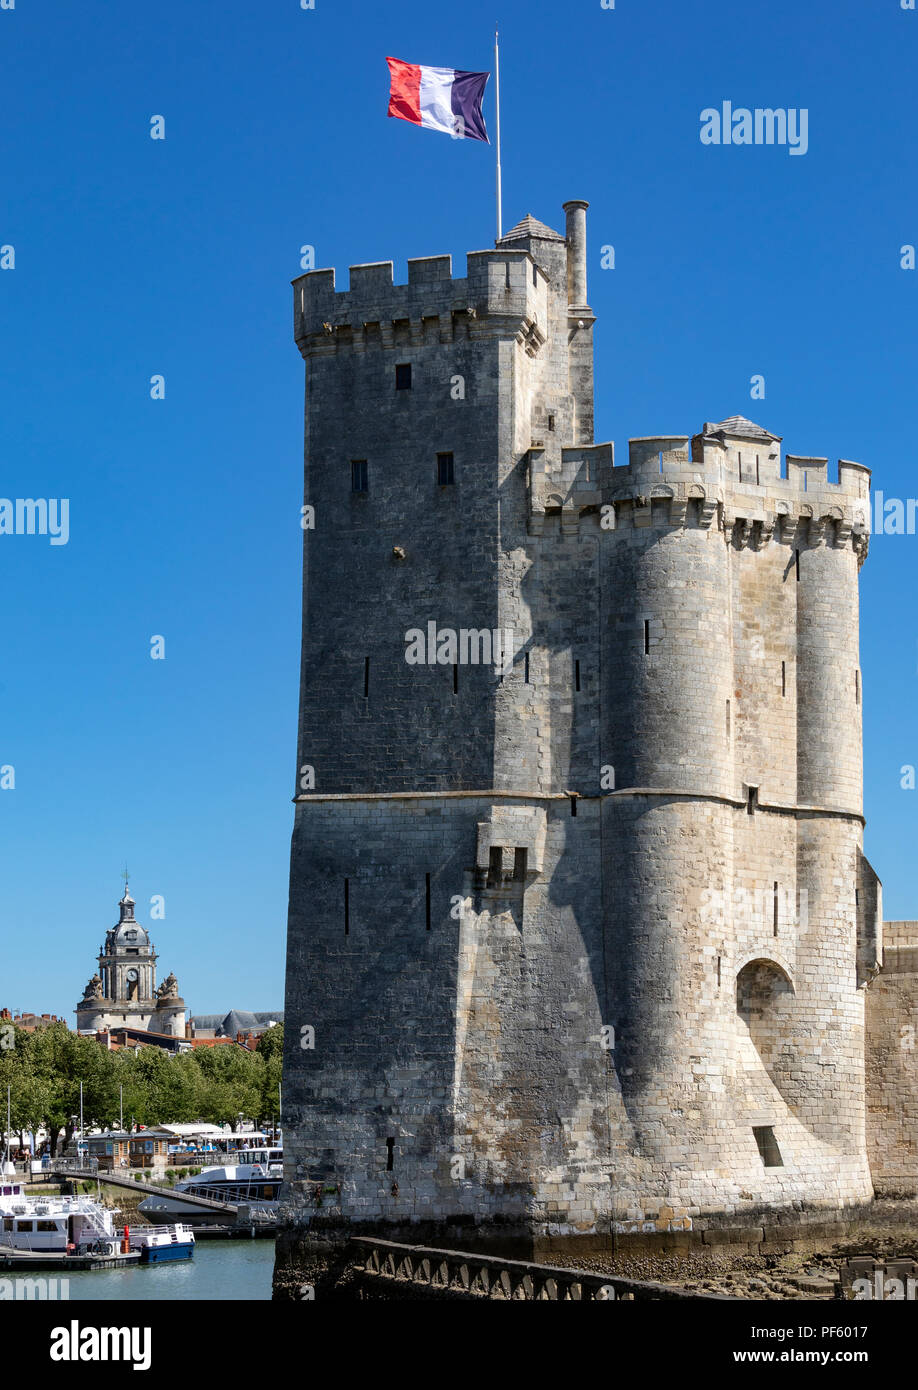 Tour de la chaîne dans le Vieux Port de La Rochelle, sur la côte de la région de la France. Cette date repère du 11ème siècle. Banque D'Images